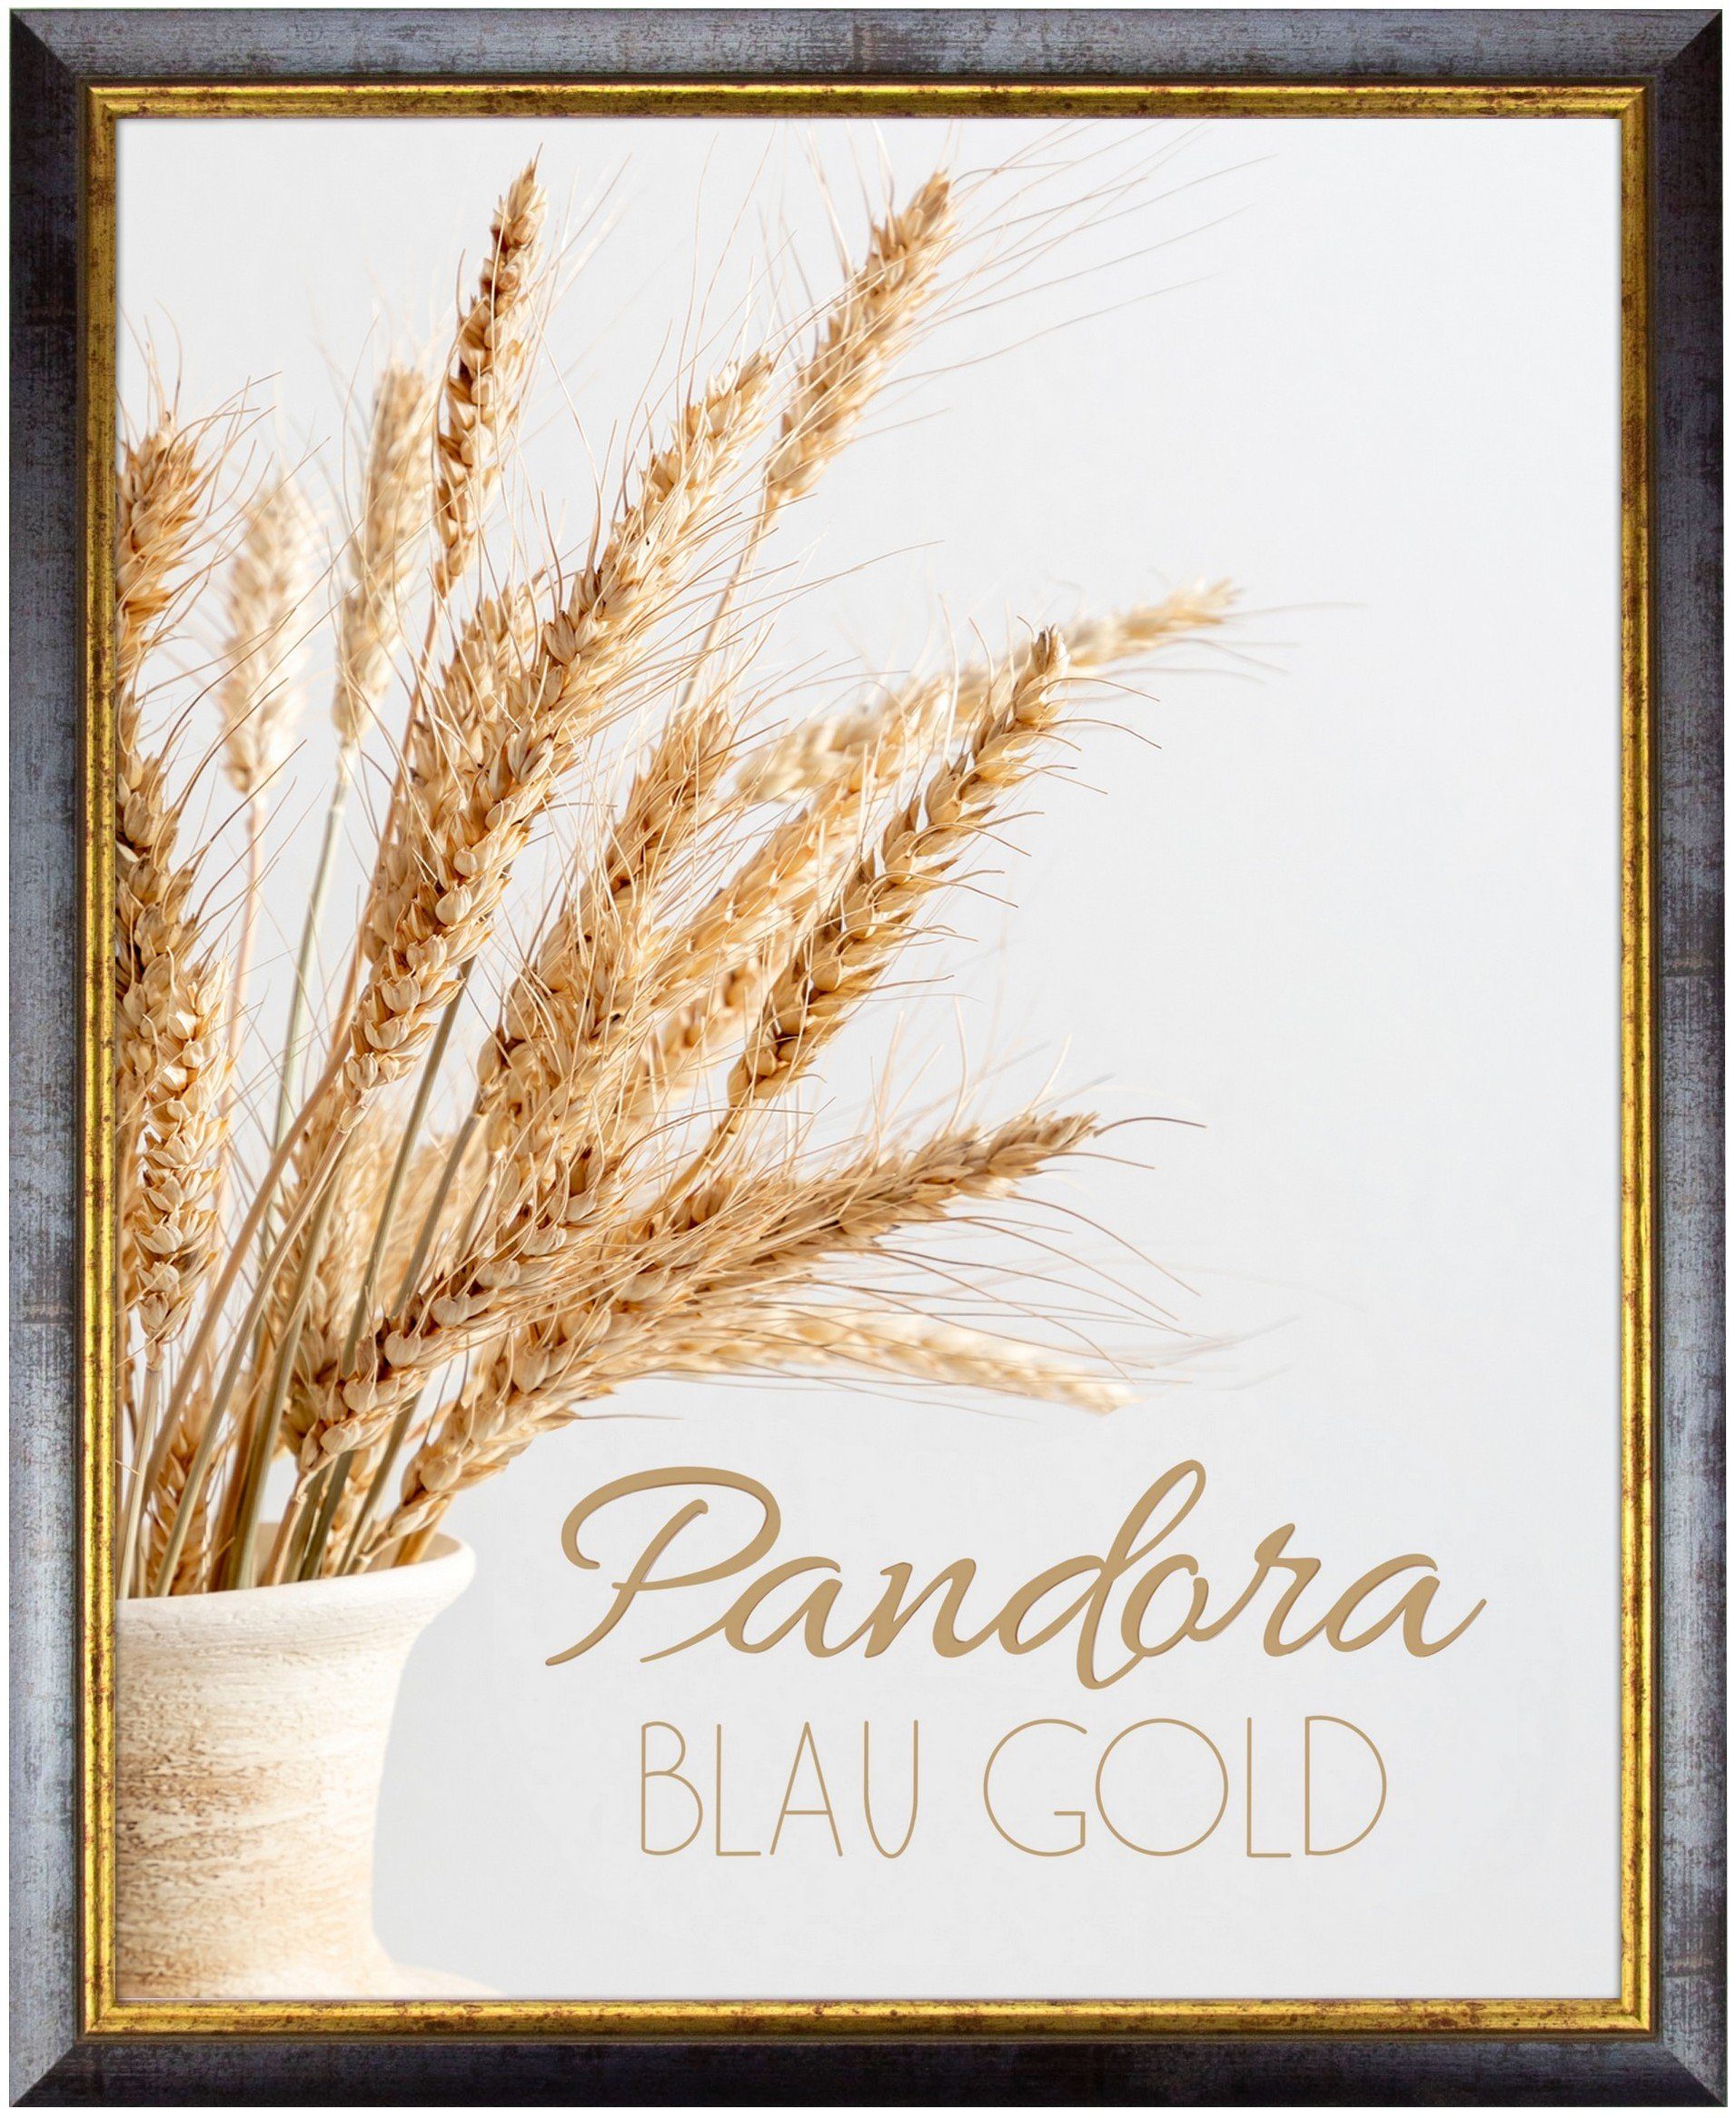 myposterframe Einzelrahmen Bilderrahmen Aged Vintage Pandora, (1 Stück), 20x20 cm, Blau Gold, Echtholz